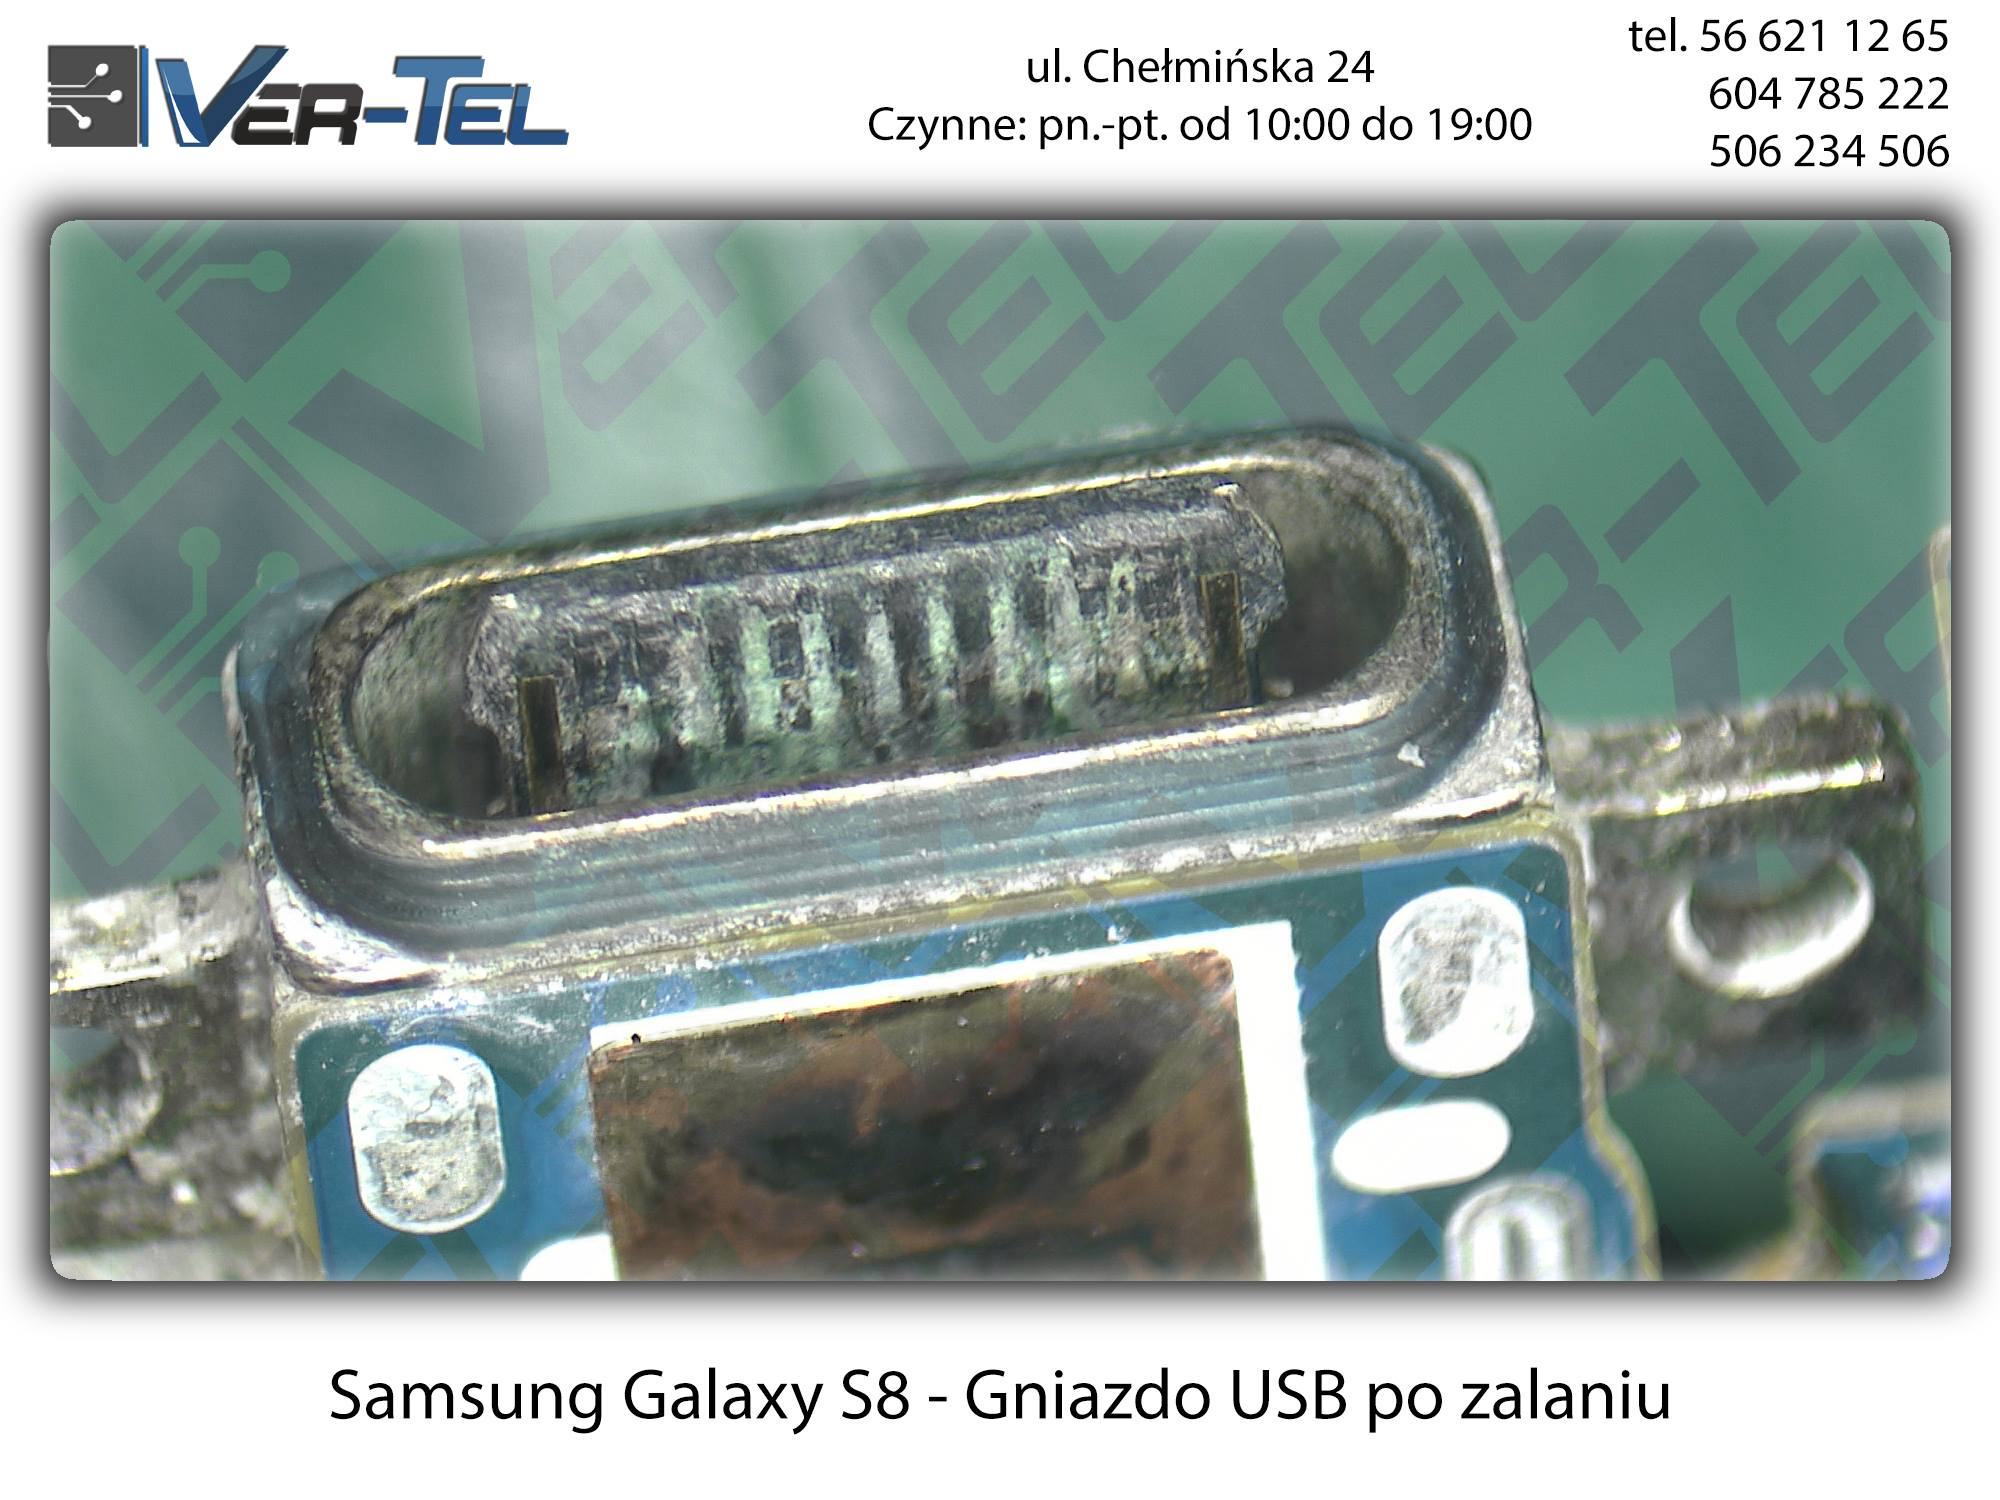 Samsung-S8-po-zalaniu